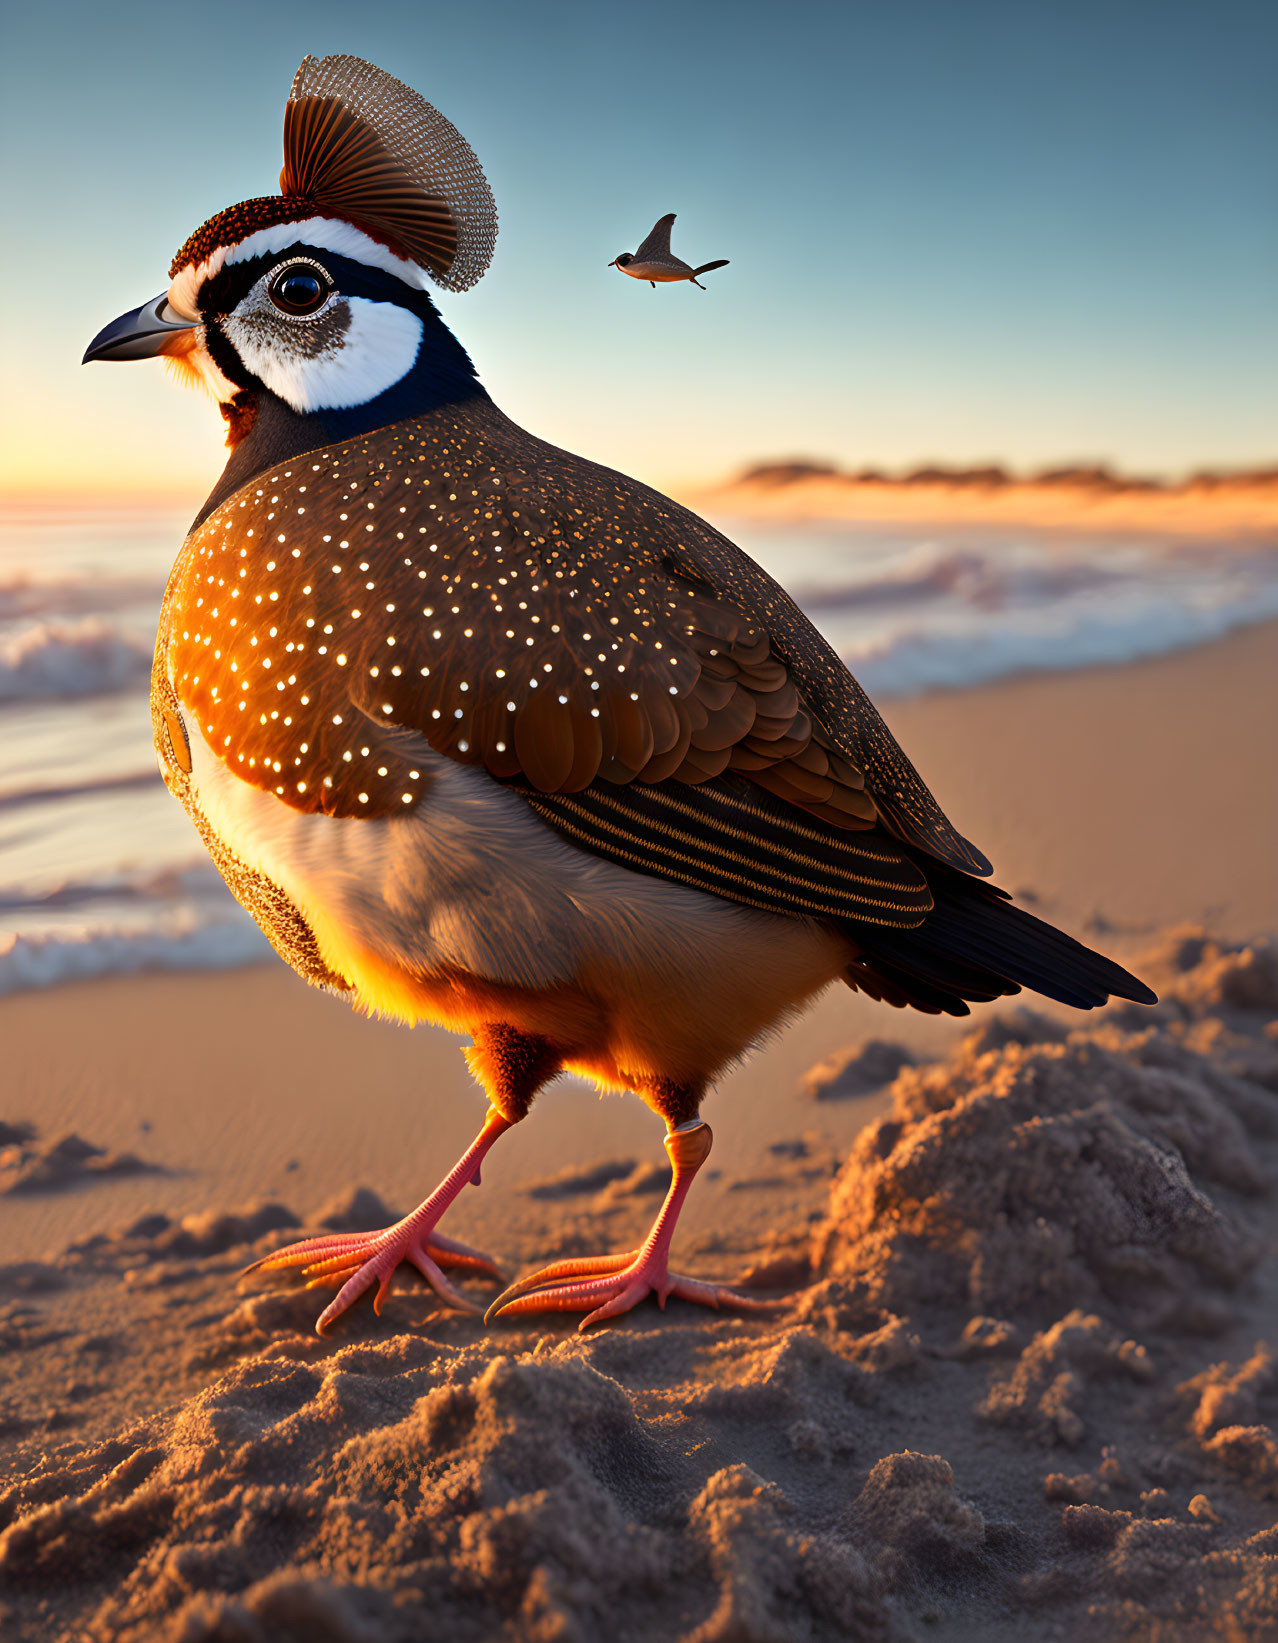 Quail with sunhat on sandy beach at sunset, ocean and bird in sky